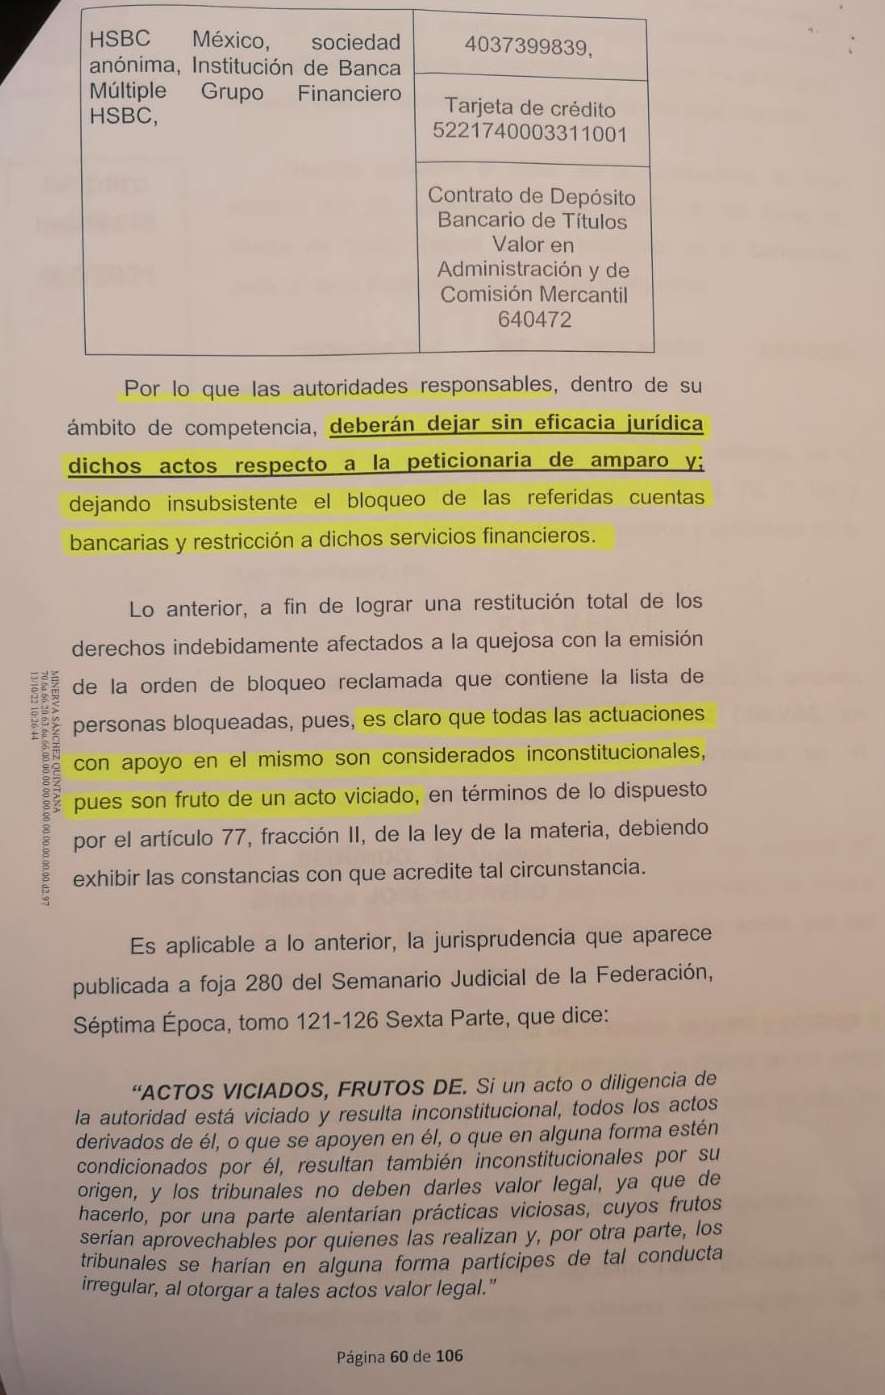 Juicio de amparo indirecto promovido por José Alfredo Álvarez Cuevas